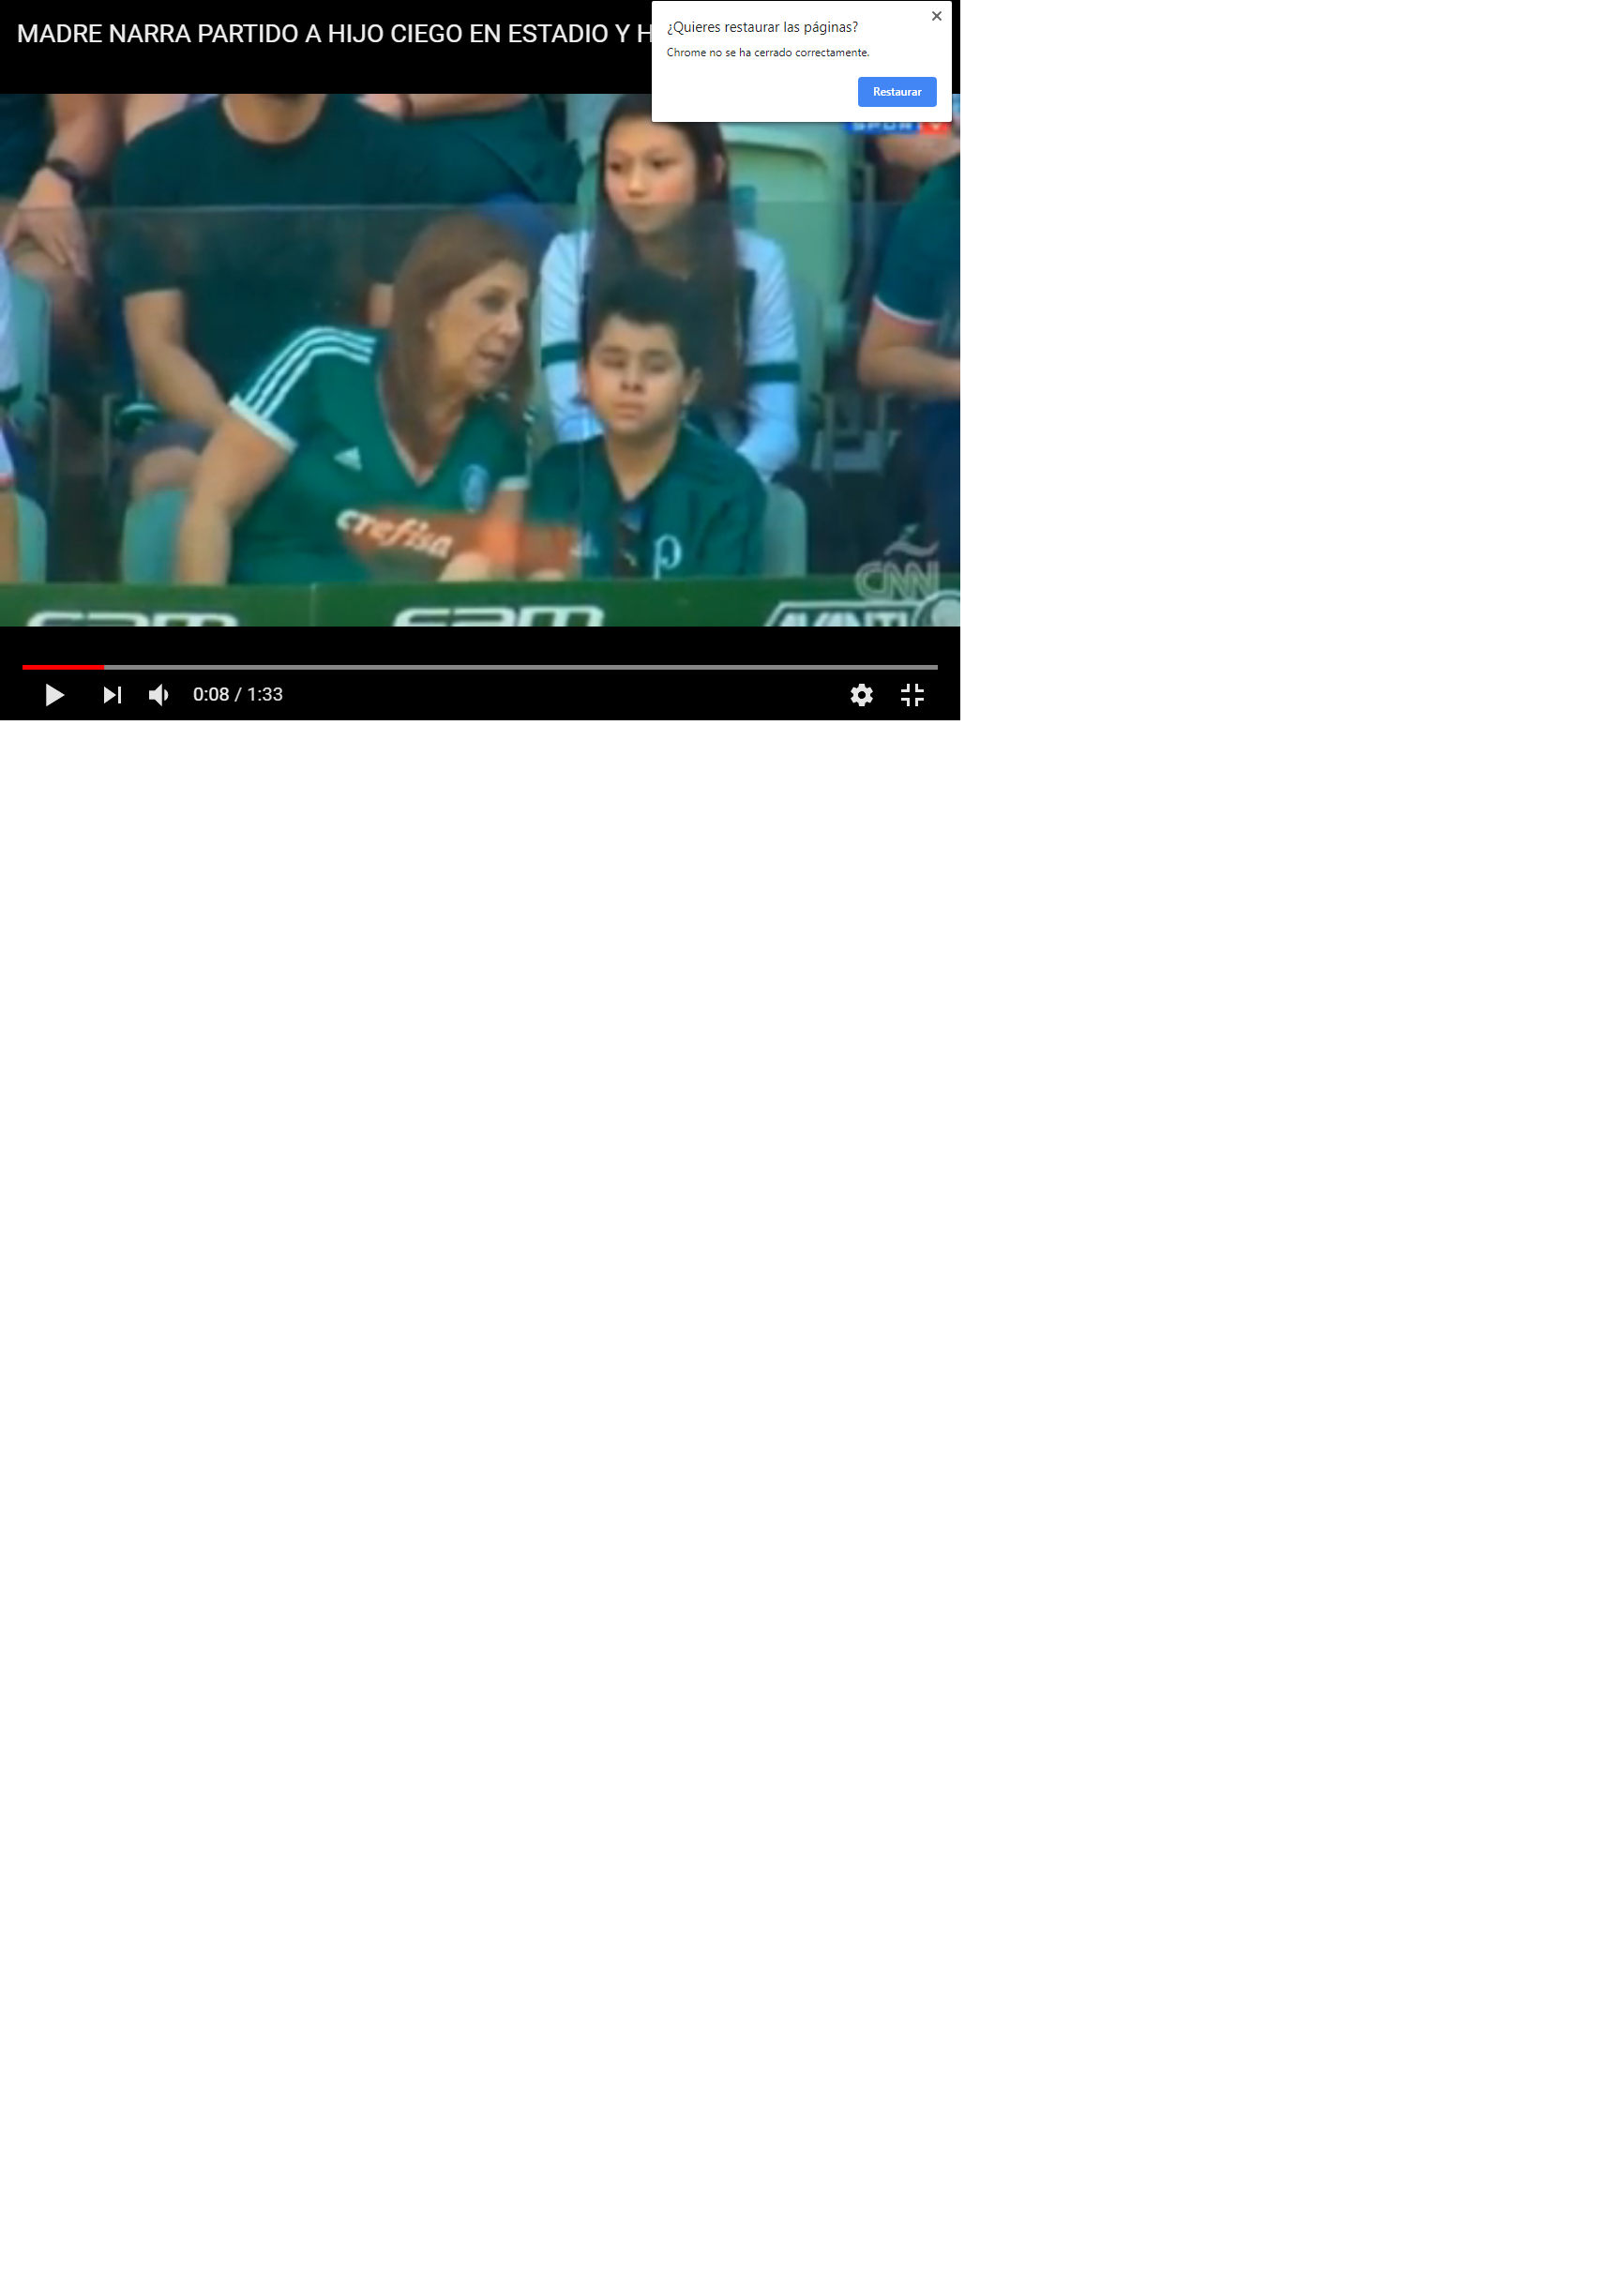 Captura de imagen en Youtube, con la madre narrando el partido a su hijo invidente en pleno estadio